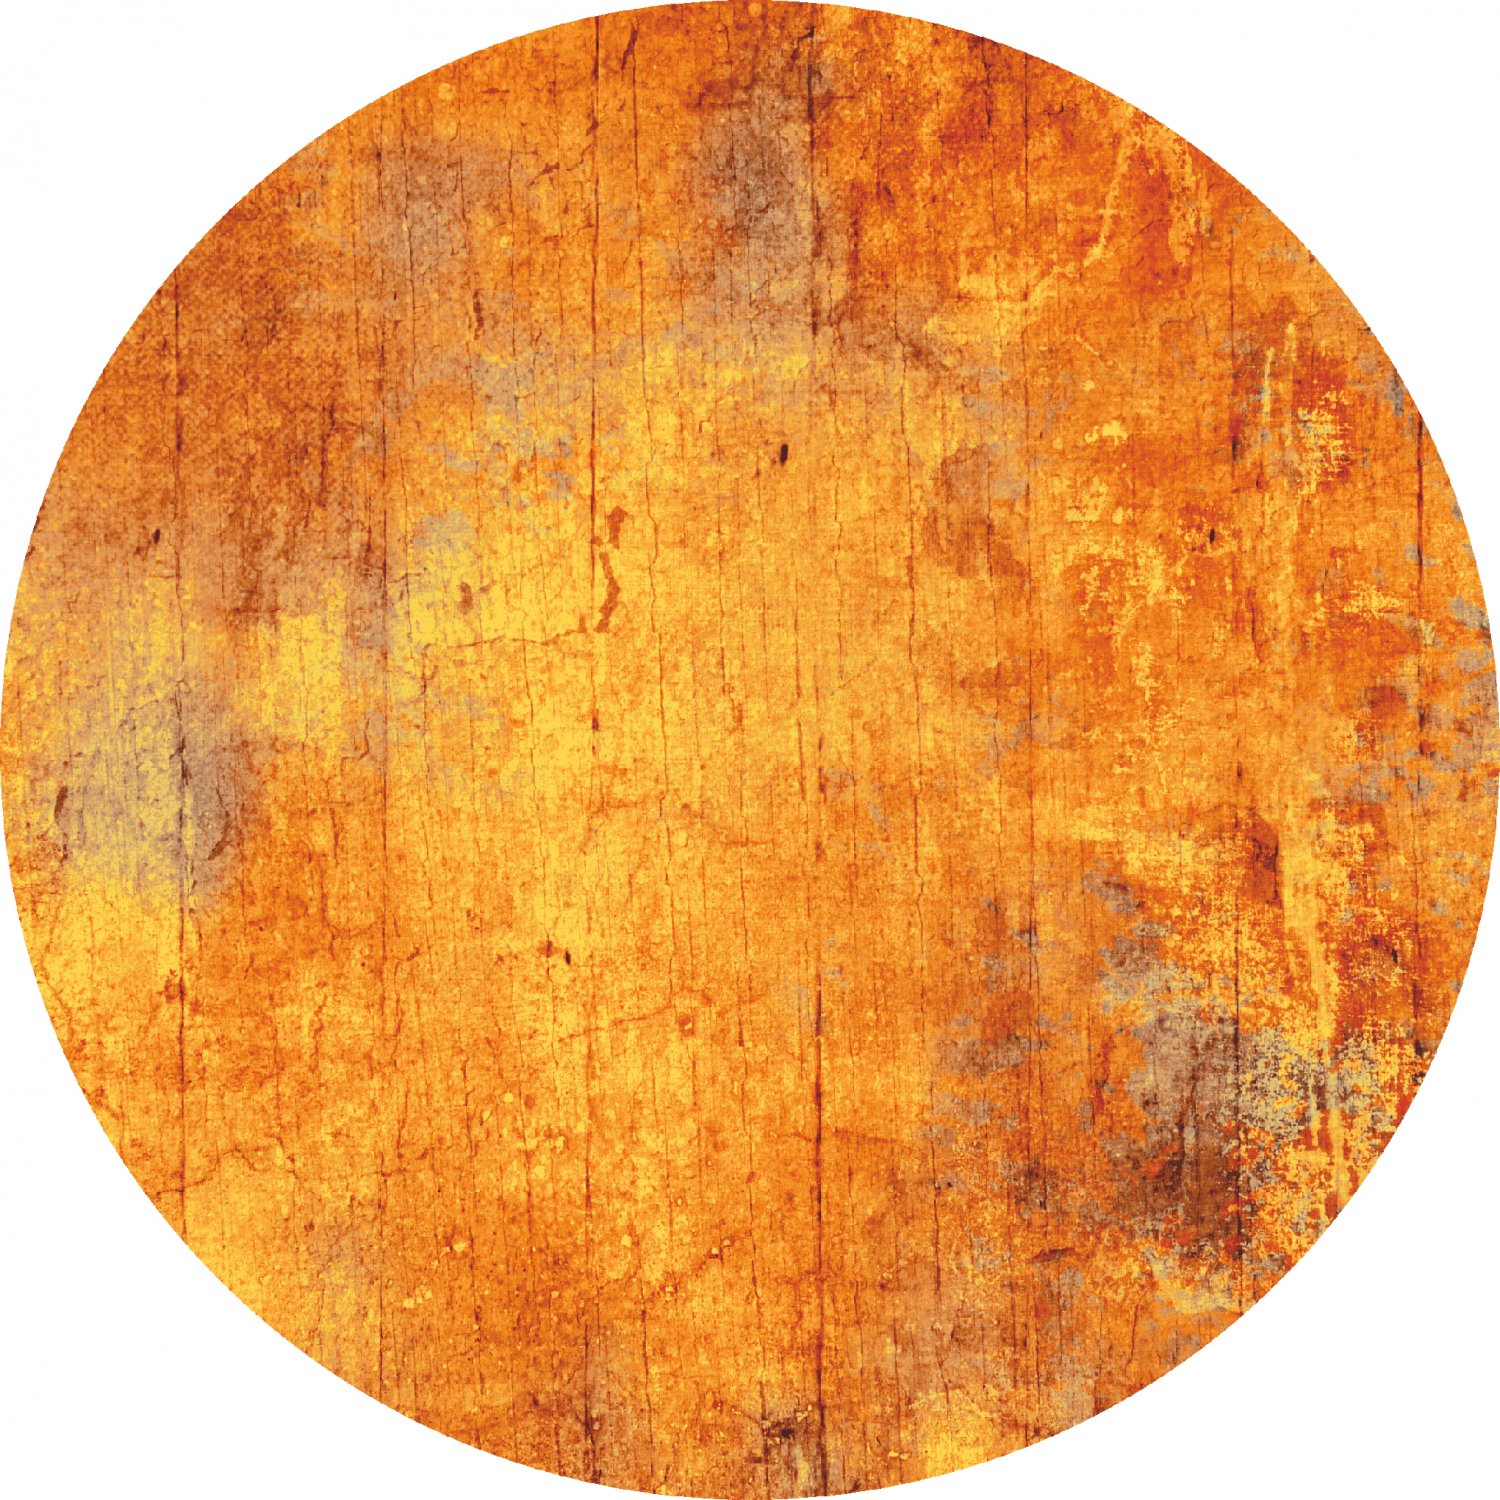 Rund Teppich - Cesano (orange)